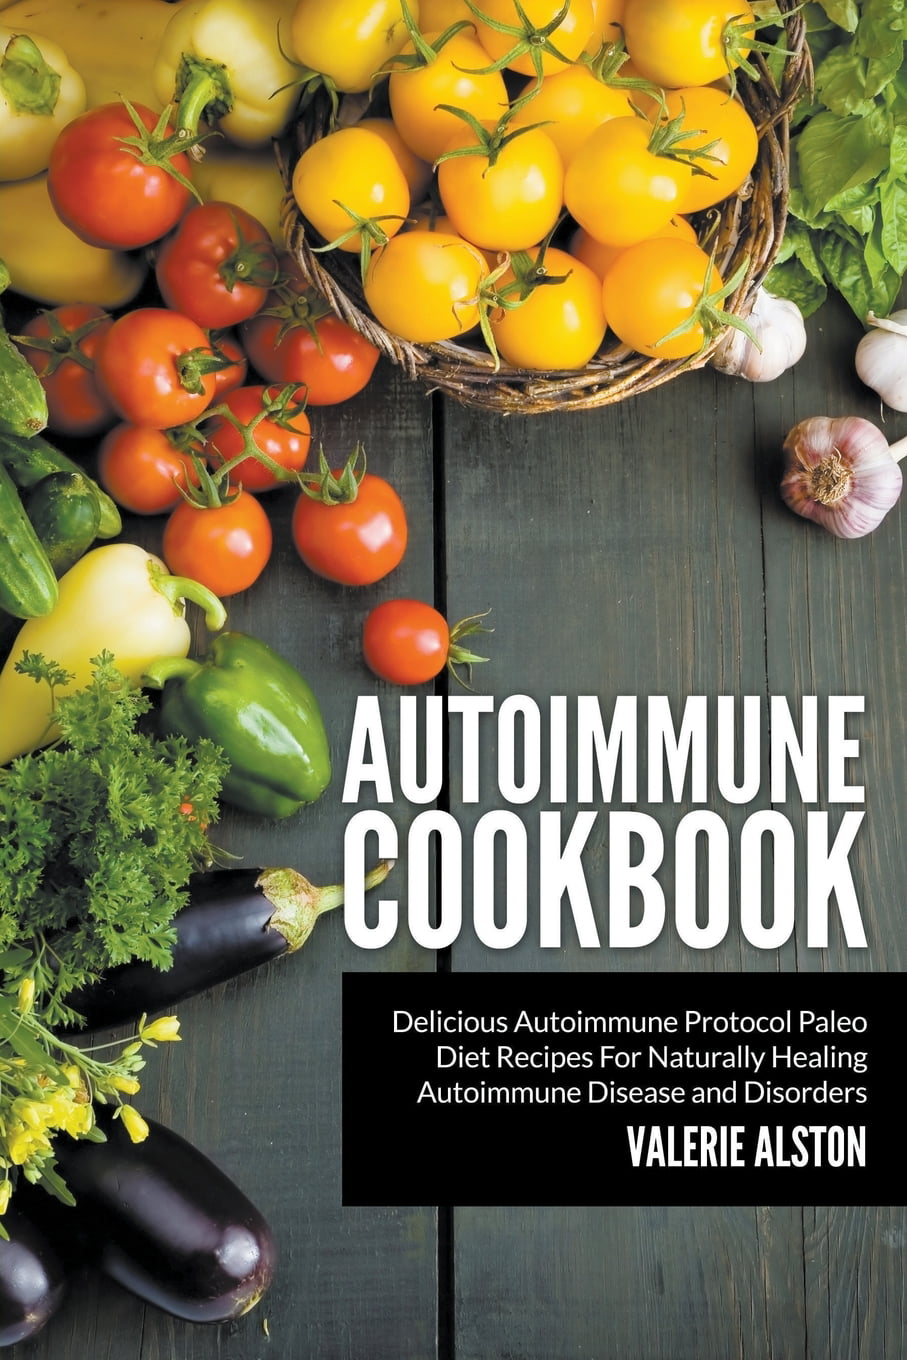 Autoimmune Cookbook: Delicious Autoimmune Protocol Paleo Diet Recipes